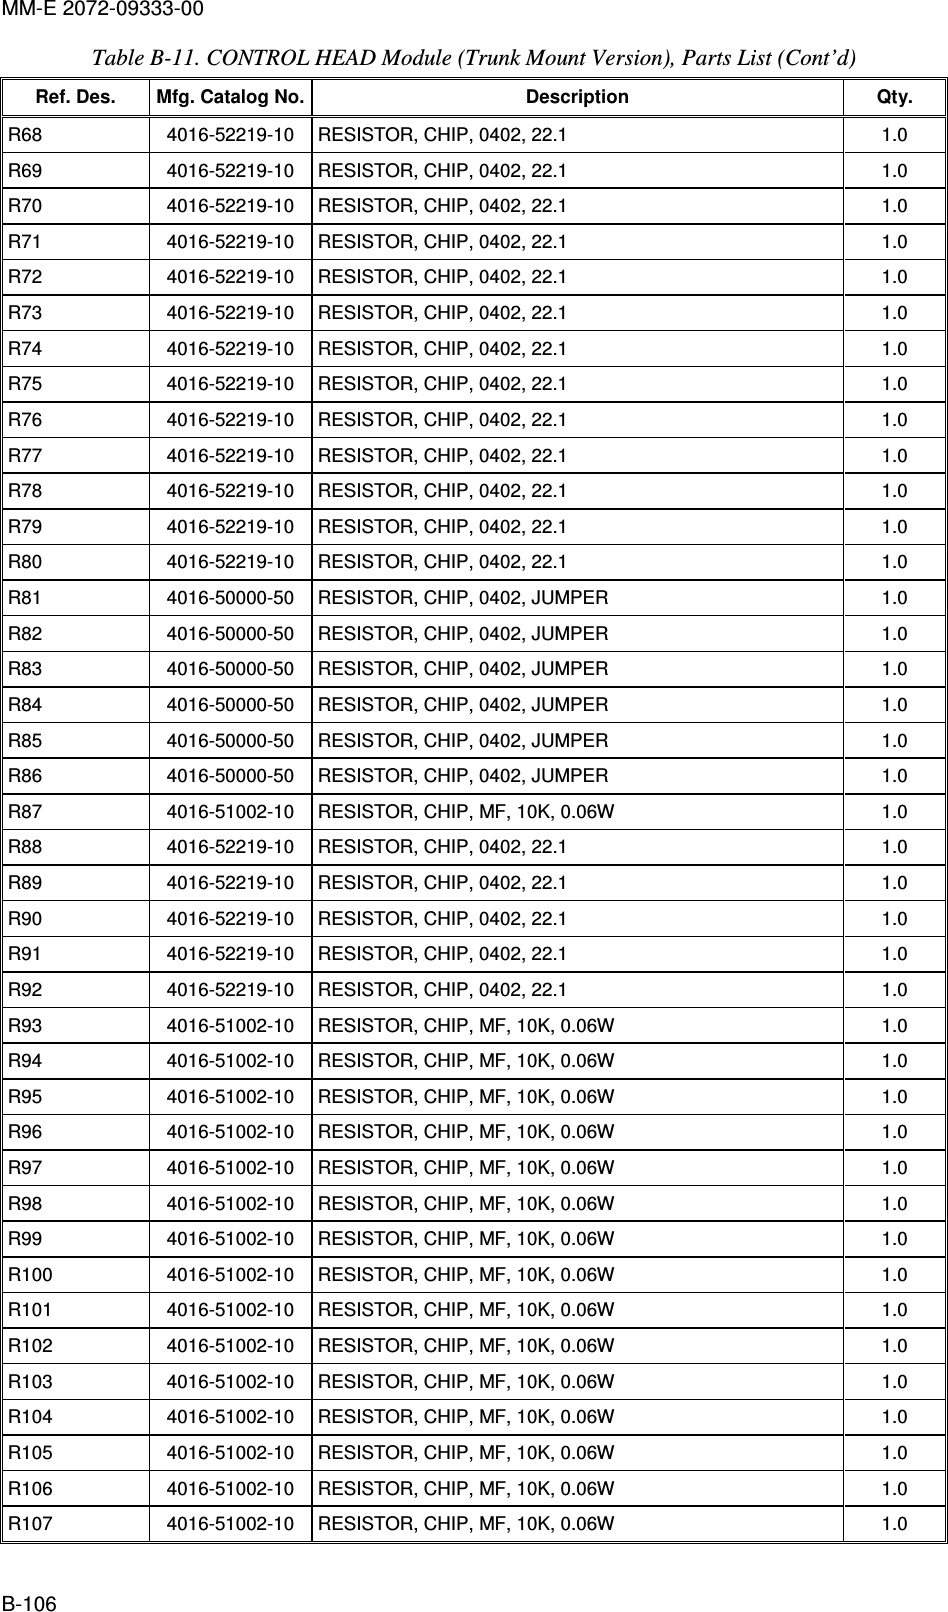 MM-E 2072-09333-00 B-106 Table  B-11. CONTROL HEAD Module (Trunk Mount Version), Parts List (Cont’d)  Ref. Des.  Mfg. Catalog No. Description  Qty. R68   4016-52219-10   RESISTOR, CHIP, 0402, 22.1  1.0  R69   4016-52219-10   RESISTOR, CHIP, 0402, 22.1  1.0  R70   4016-52219-10   RESISTOR, CHIP, 0402, 22.1  1.0  R71   4016-52219-10   RESISTOR, CHIP, 0402, 22.1  1.0  R72   4016-52219-10   RESISTOR, CHIP, 0402, 22.1  1.0  R73   4016-52219-10   RESISTOR, CHIP, 0402, 22.1  1.0  R74   4016-52219-10   RESISTOR, CHIP, 0402, 22.1  1.0  R75   4016-52219-10   RESISTOR, CHIP, 0402, 22.1  1.0  R76   4016-52219-10   RESISTOR, CHIP, 0402, 22.1  1.0  R77   4016-52219-10   RESISTOR, CHIP, 0402, 22.1  1.0  R78   4016-52219-10   RESISTOR, CHIP, 0402, 22.1  1.0  R79   4016-52219-10   RESISTOR, CHIP, 0402, 22.1  1.0  R80   4016-52219-10   RESISTOR, CHIP, 0402, 22.1  1.0  R81   4016-50000-50   RESISTOR, CHIP, 0402, JUMPER  1.0  R82   4016-50000-50   RESISTOR, CHIP, 0402, JUMPER  1.0  R83   4016-50000-50   RESISTOR, CHIP, 0402, JUMPER  1.0  R84   4016-50000-50   RESISTOR, CHIP, 0402, JUMPER  1.0  R85   4016-50000-50   RESISTOR, CHIP, 0402, JUMPER  1.0  R86   4016-50000-50   RESISTOR, CHIP, 0402, JUMPER  1.0  R87   4016-51002-10   RESISTOR, CHIP, MF, 10K, 0.06W  1.0  R88   4016-52219-10   RESISTOR, CHIP, 0402, 22.1  1.0  R89   4016-52219-10   RESISTOR, CHIP, 0402, 22.1  1.0  R90   4016-52219-10   RESISTOR, CHIP, 0402, 22.1  1.0  R91   4016-52219-10   RESISTOR, CHIP, 0402, 22.1  1.0  R92   4016-52219-10   RESISTOR, CHIP, 0402, 22.1  1.0  R93   4016-51002-10   RESISTOR, CHIP, MF, 10K, 0.06W  1.0  R94   4016-51002-10   RESISTOR, CHIP, MF, 10K, 0.06W  1.0  R95   4016-51002-10   RESISTOR, CHIP, MF, 10K, 0.06W  1.0  R96   4016-51002-10   RESISTOR, CHIP, MF, 10K, 0.06W  1.0  R97   4016-51002-10   RESISTOR, CHIP, MF, 10K, 0.06W  1.0  R98   4016-51002-10   RESISTOR, CHIP, MF, 10K, 0.06W  1.0  R99   4016-51002-10   RESISTOR, CHIP, MF, 10K, 0.06W  1.0  R100  4016-51002-10   RESISTOR, CHIP, MF, 10K, 0.06W  1.0  R101   4016-51002-10   RESISTOR, CHIP, MF, 10K, 0.06W  1.0  R102   4016-51002-10   RESISTOR, CHIP, MF, 10K, 0.06W  1.0  R103   4016-51002-10   RESISTOR, CHIP, MF, 10K, 0.06W  1.0  R104   4016-51002-10   RESISTOR, CHIP, MF, 10K, 0.06W  1.0  R105   4016-51002-10   RESISTOR, CHIP, MF, 10K, 0.06W  1.0  R106   4016-51002-10   RESISTOR, CHIP, MF, 10K, 0.06W  1.0  R107   4016-51002-10   RESISTOR, CHIP, MF, 10K, 0.06W  1.0  